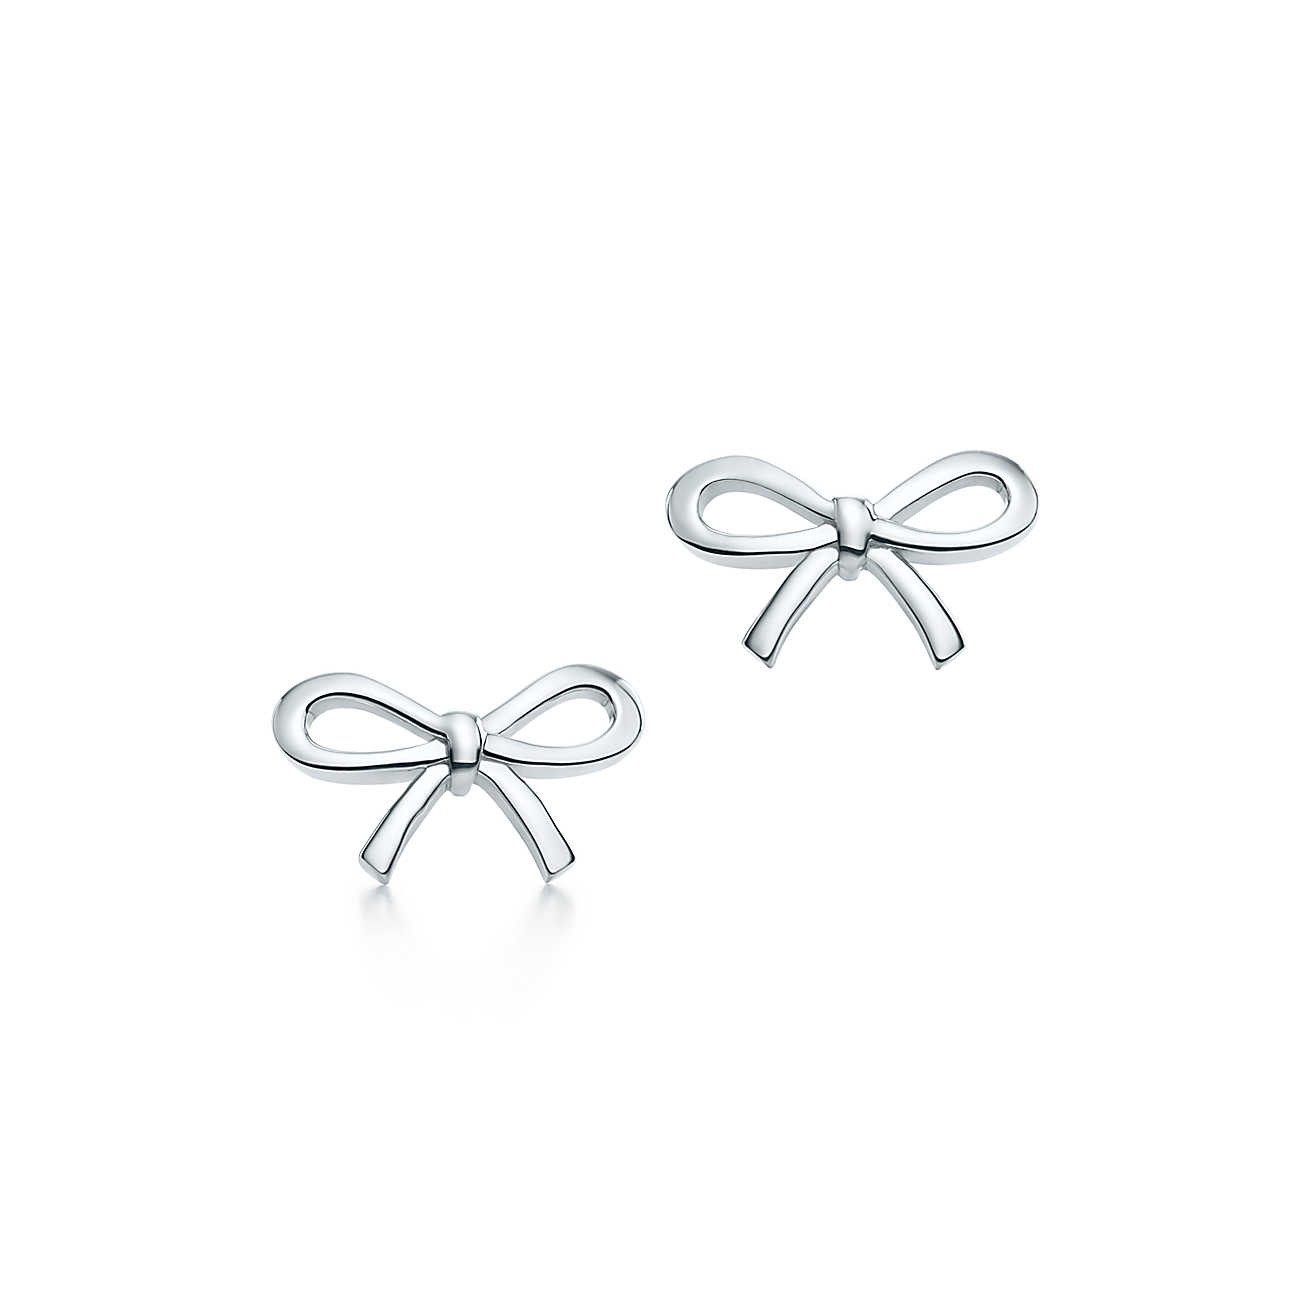 Tiffany Bow Earrings
 Tiffany Bow earrings in sterling silver mini